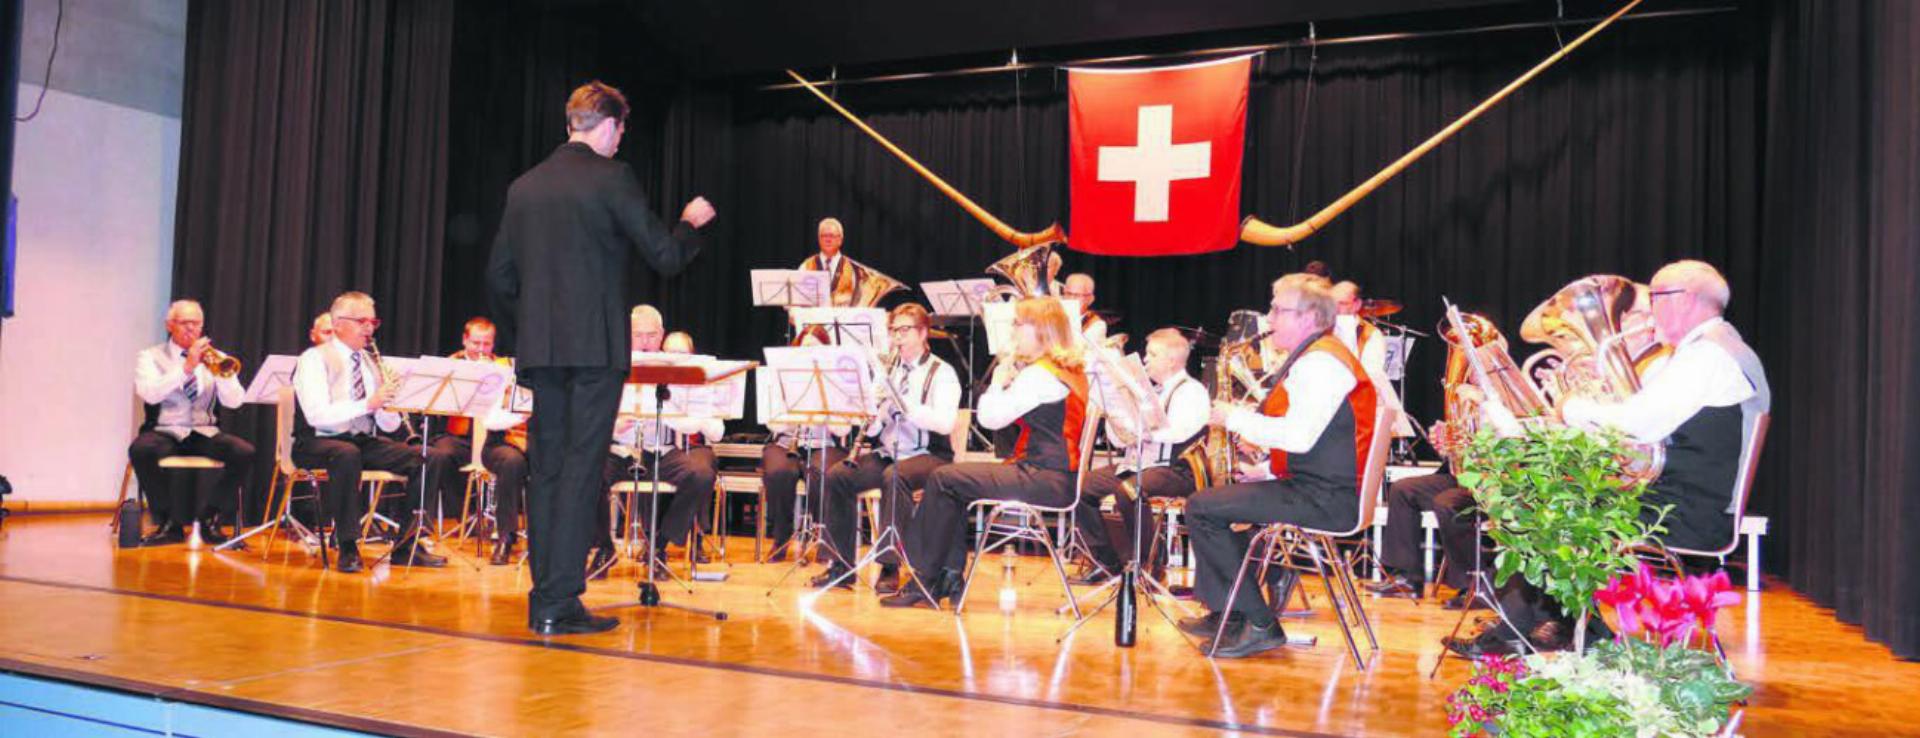 Die Musikgesellschaften Oberwil-Lieli und Zufikon boten ein unterhaltsames Konzert. Bilder: tre